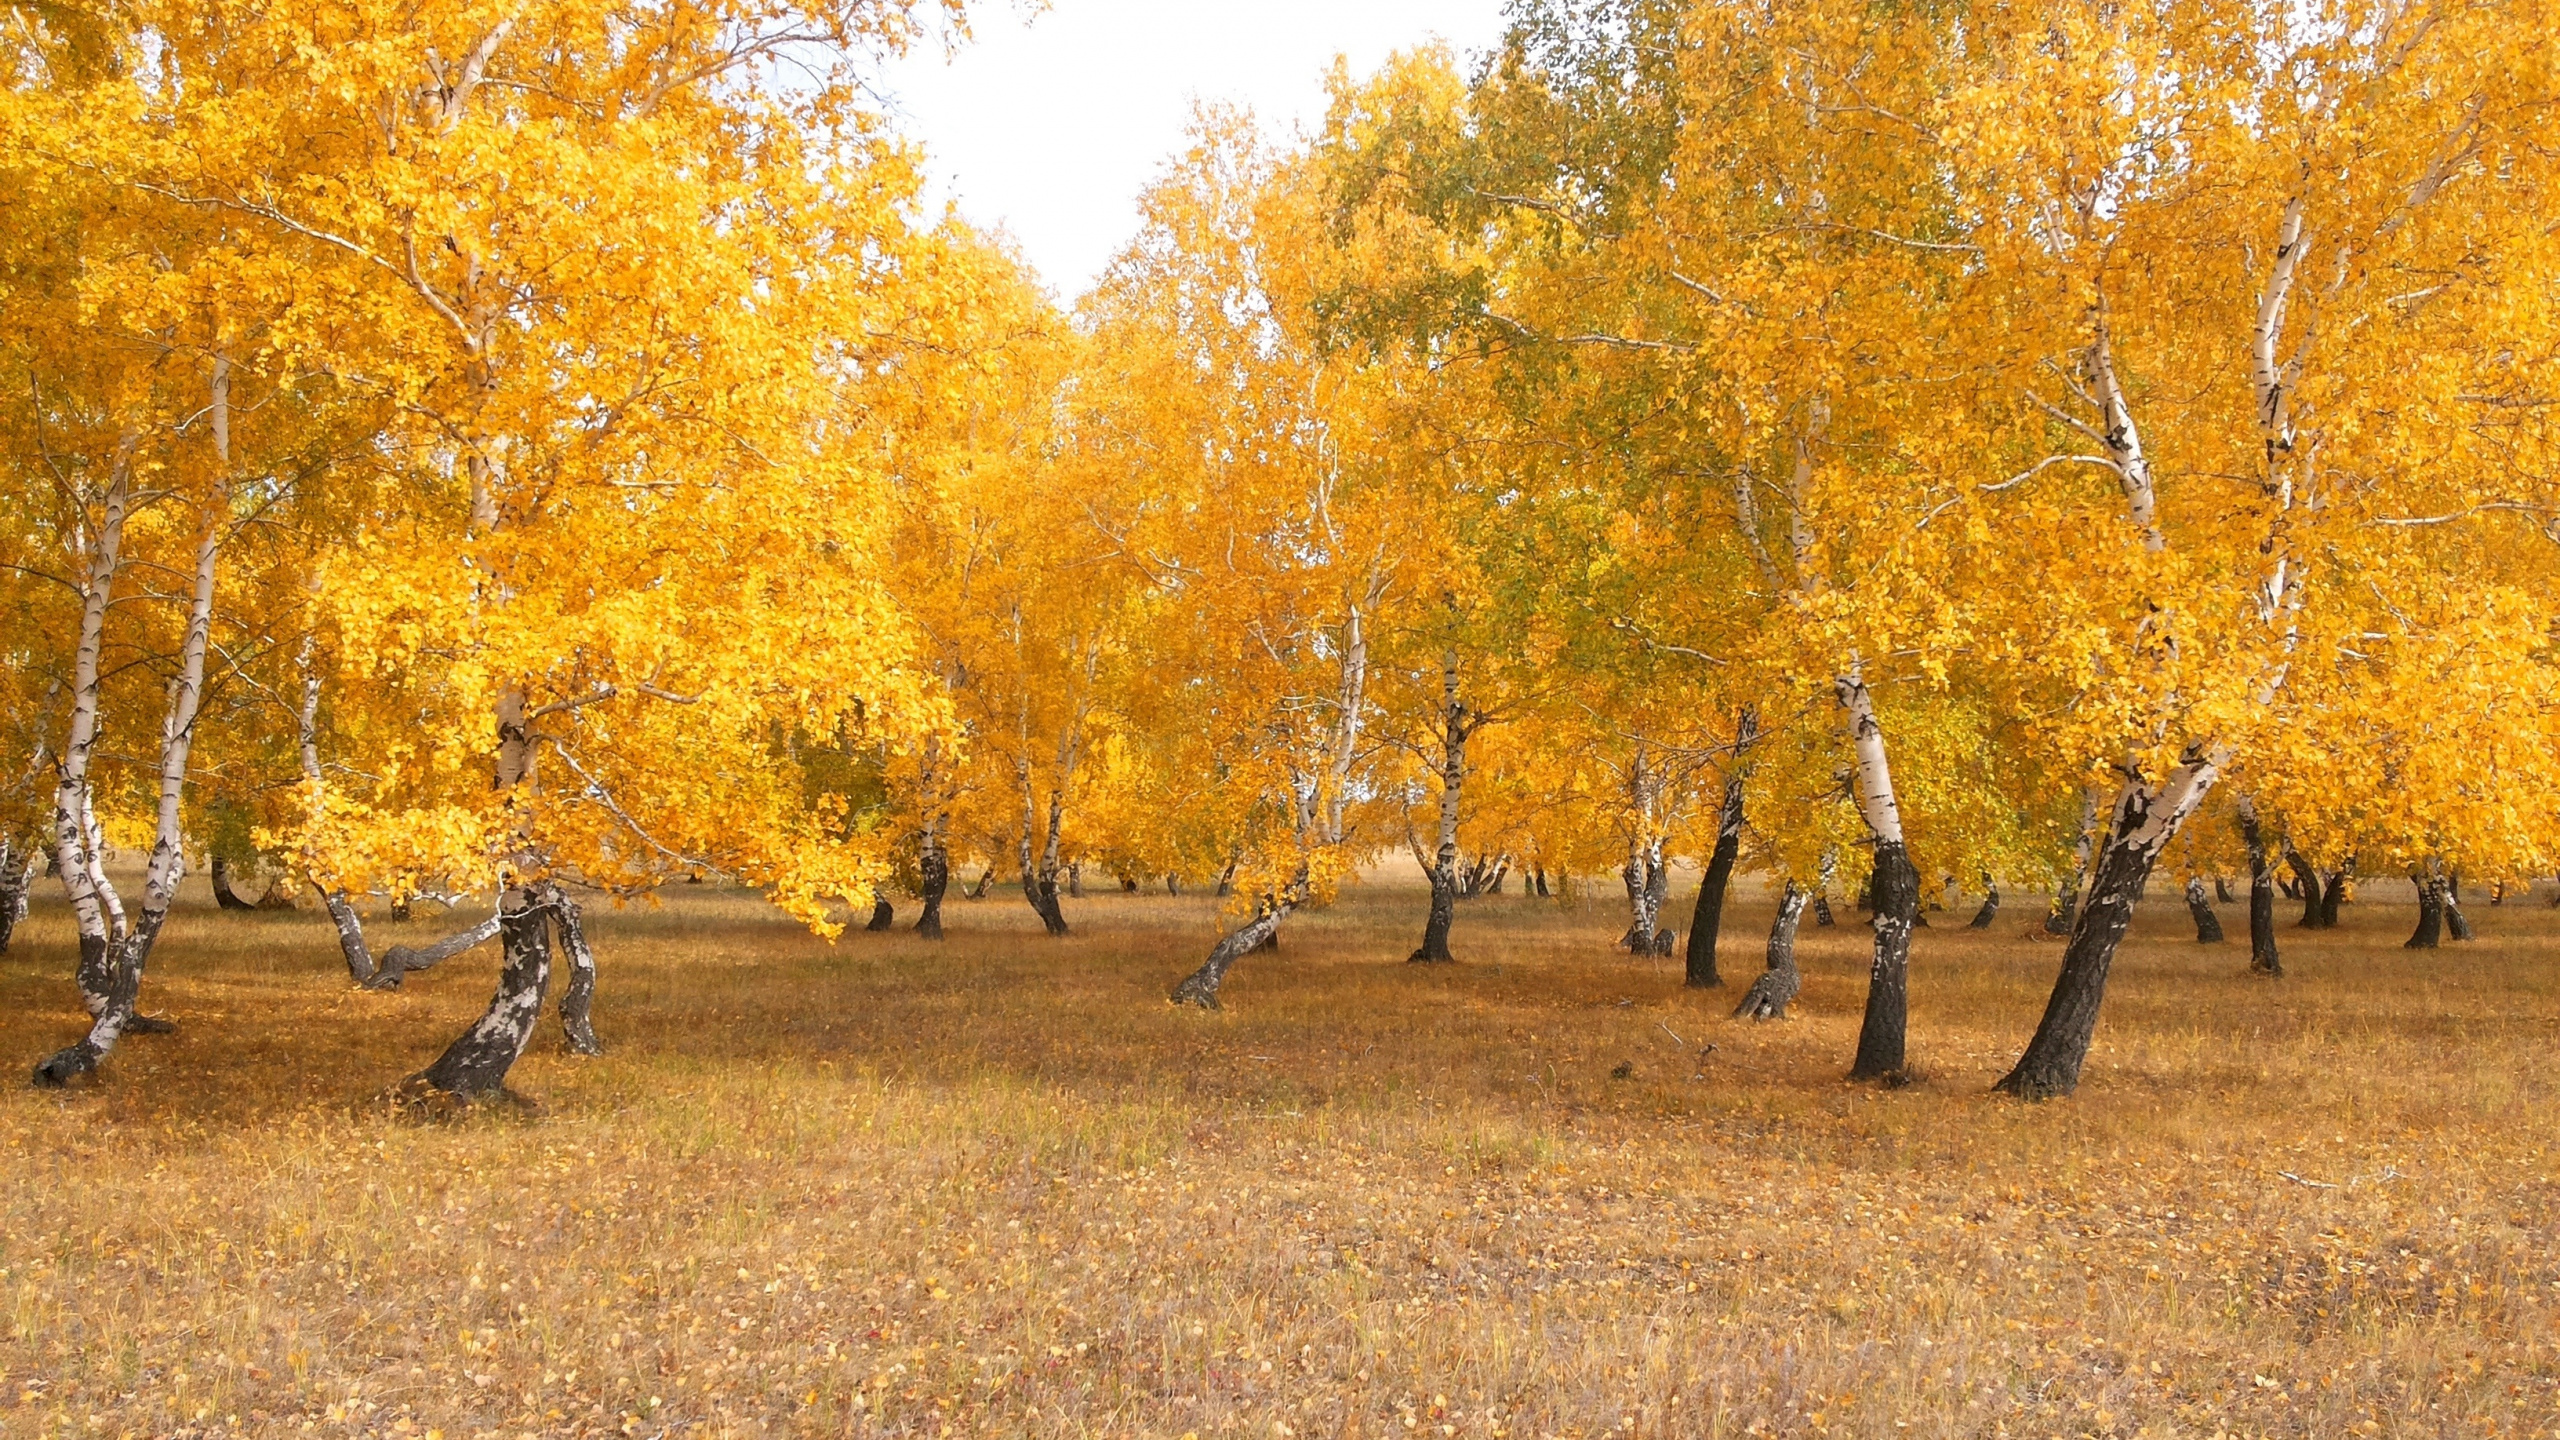 哈萨克斯坦, 性质, 木本植物, Grove, 落叶 壁纸 2560x1440 允许